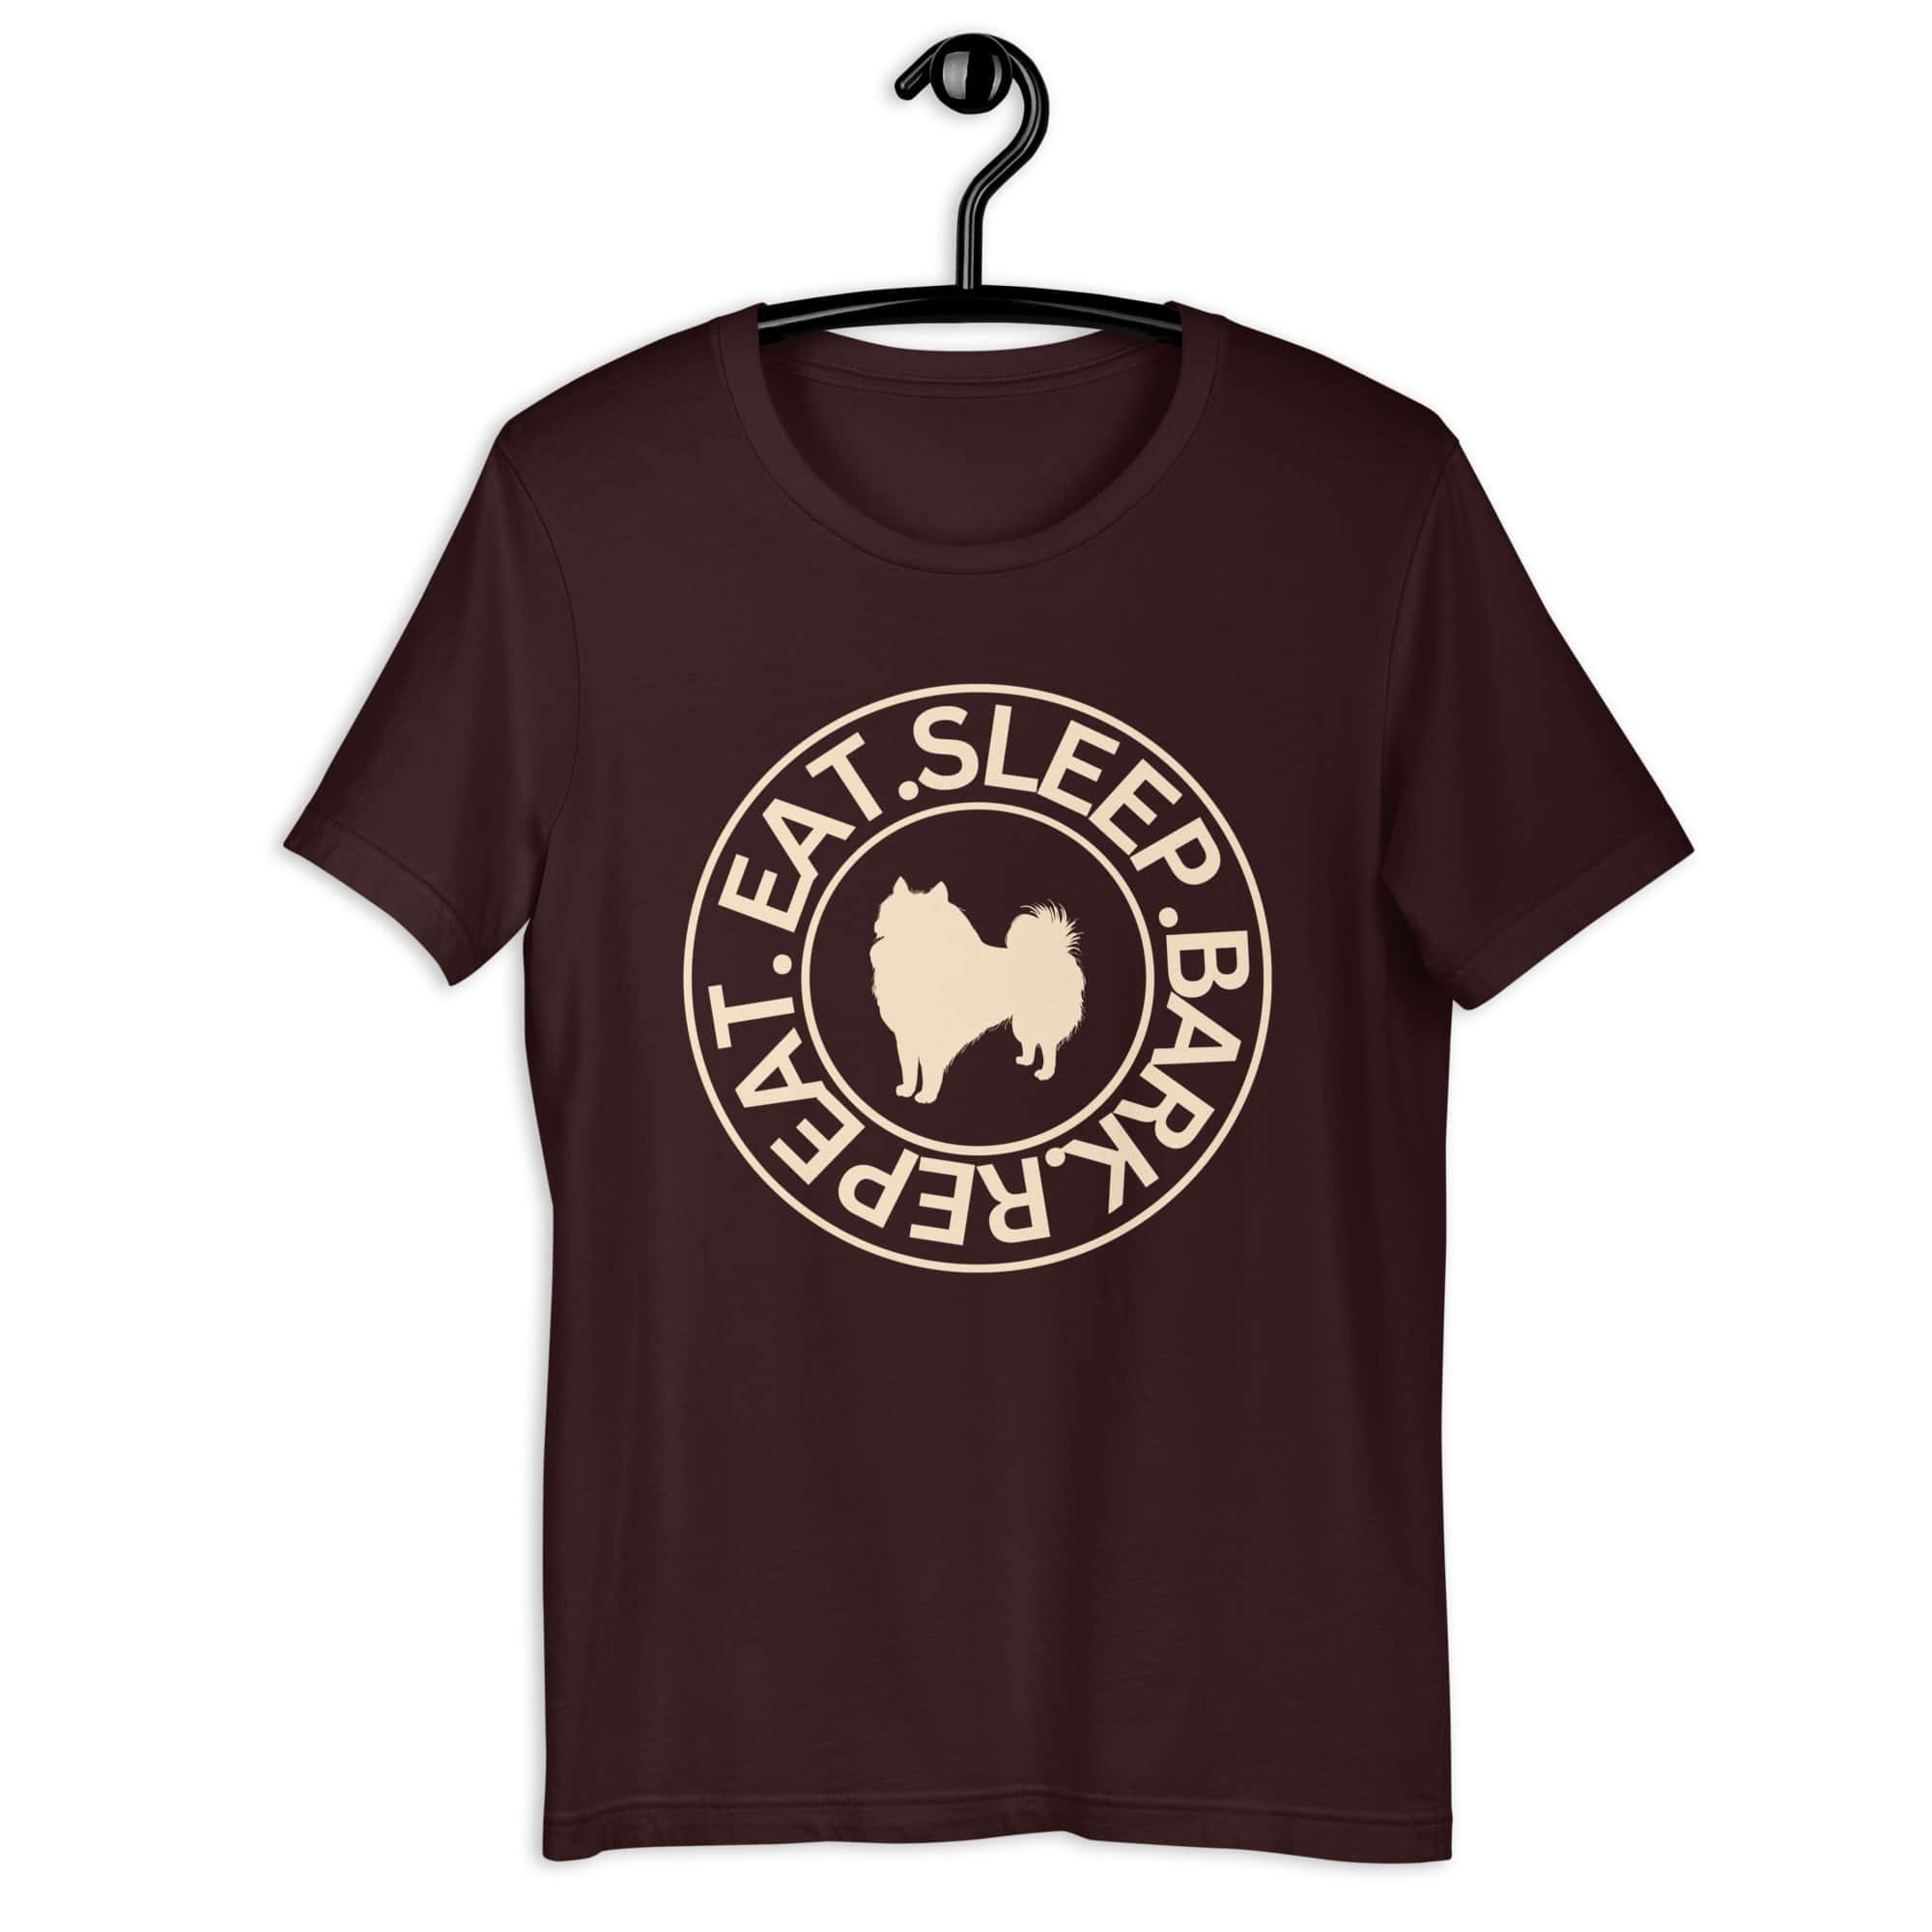 Eat Sleep Bark Repeat Poodle Unisex T-Shirt. Oxblood Black